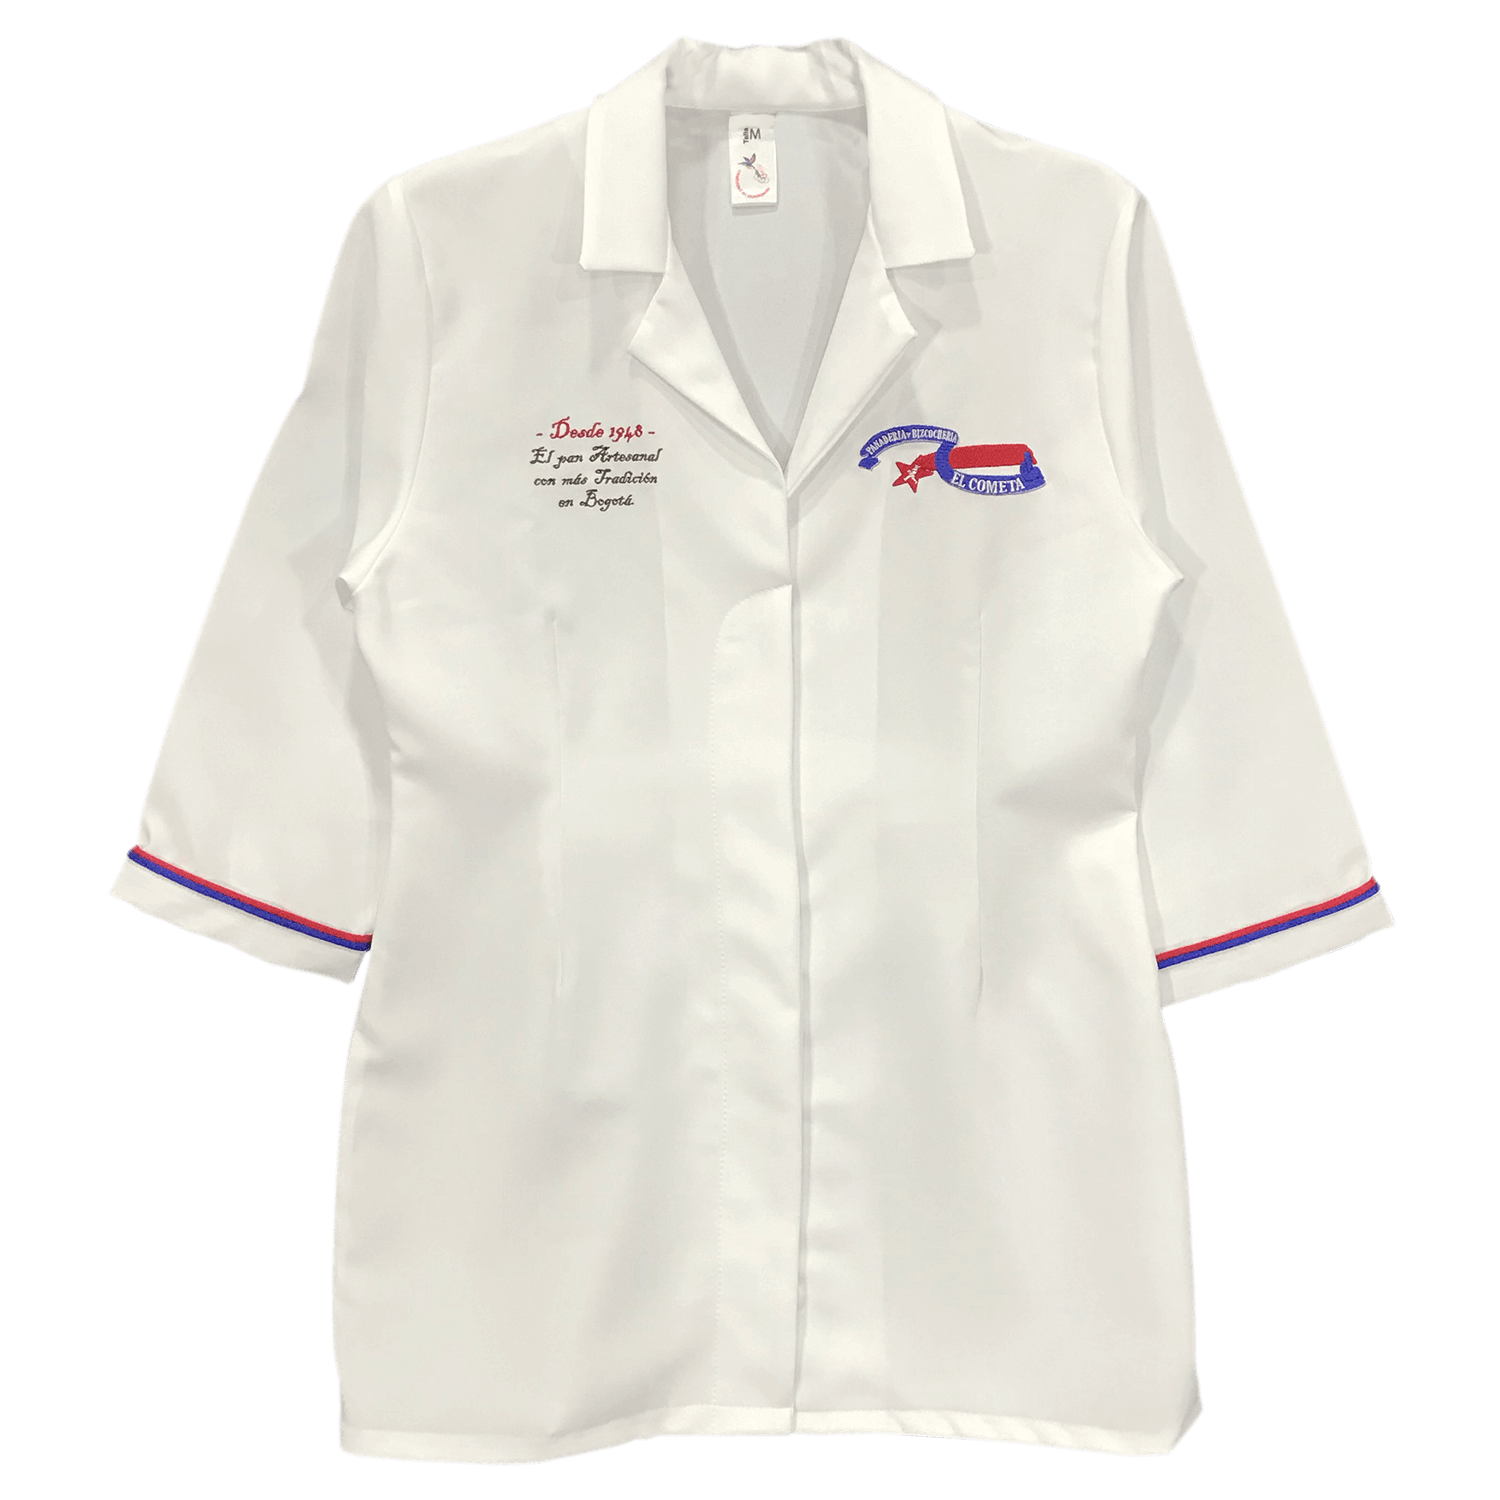 Blusas en anti fluidos tipo enfermera, droguista, servicios generales y medico en variedad de modelos, diseños y materiales.